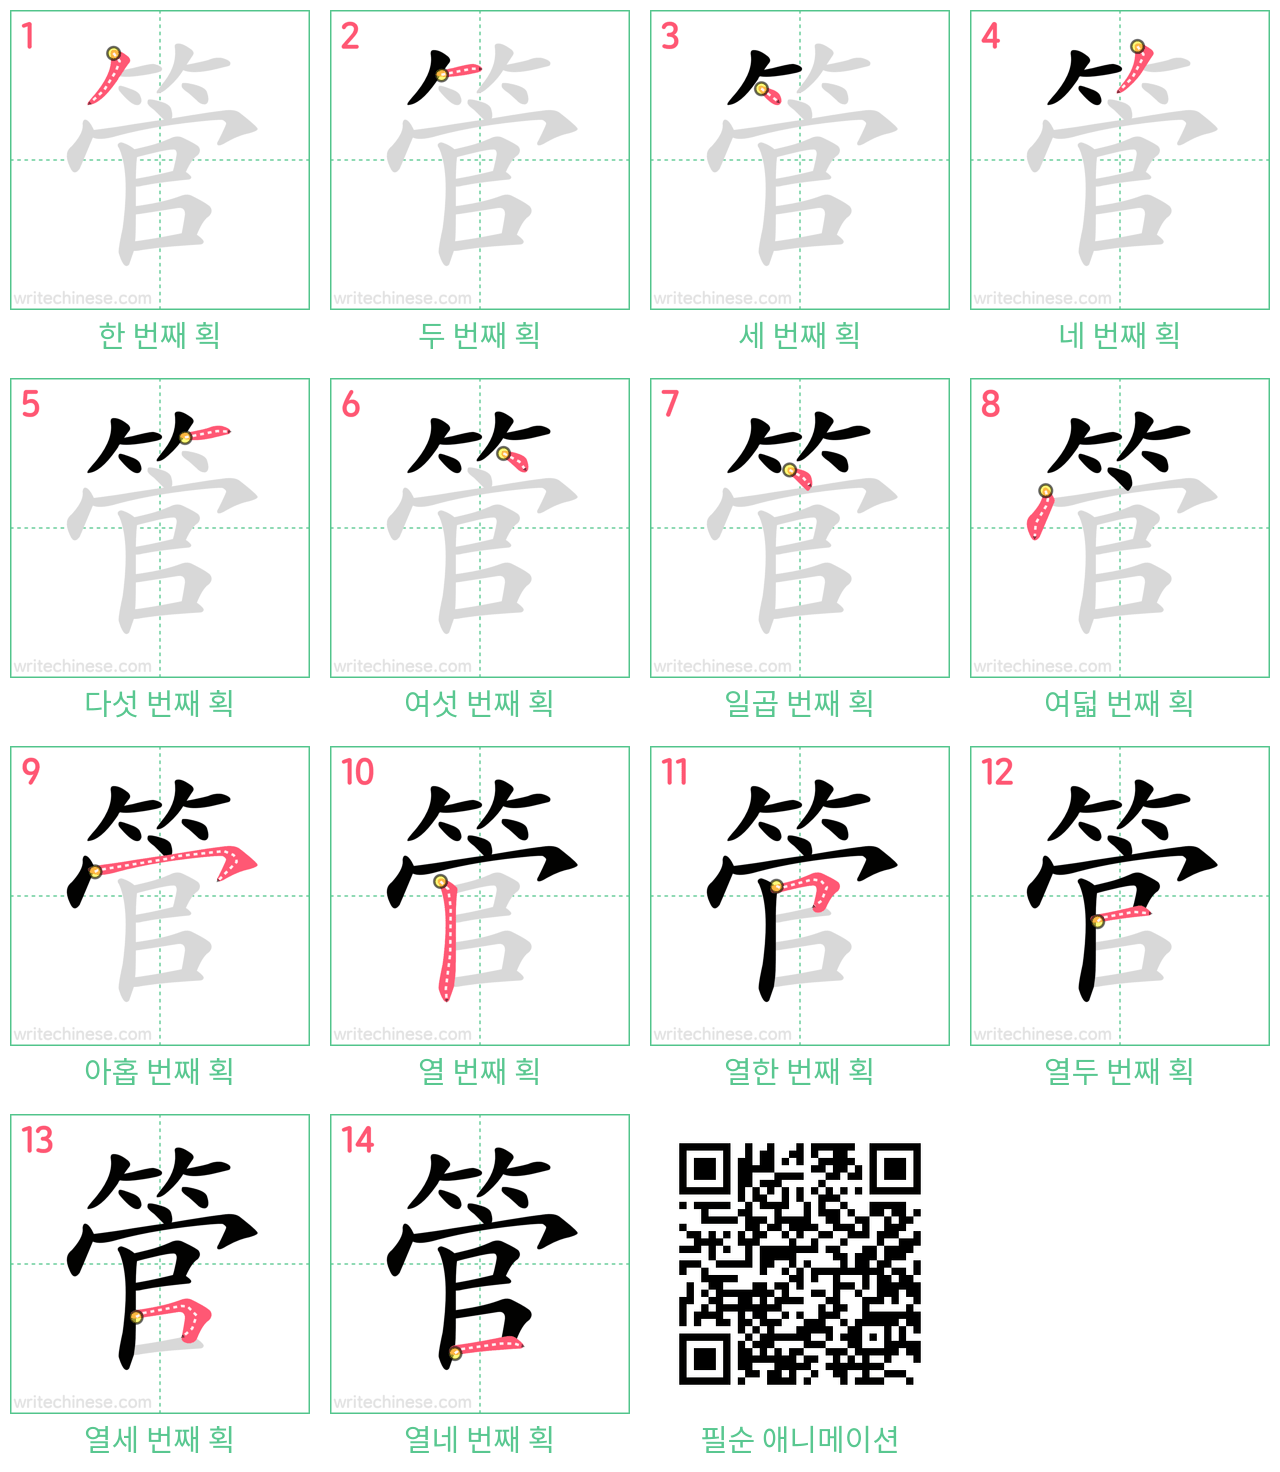 管 step-by-step stroke order diagrams